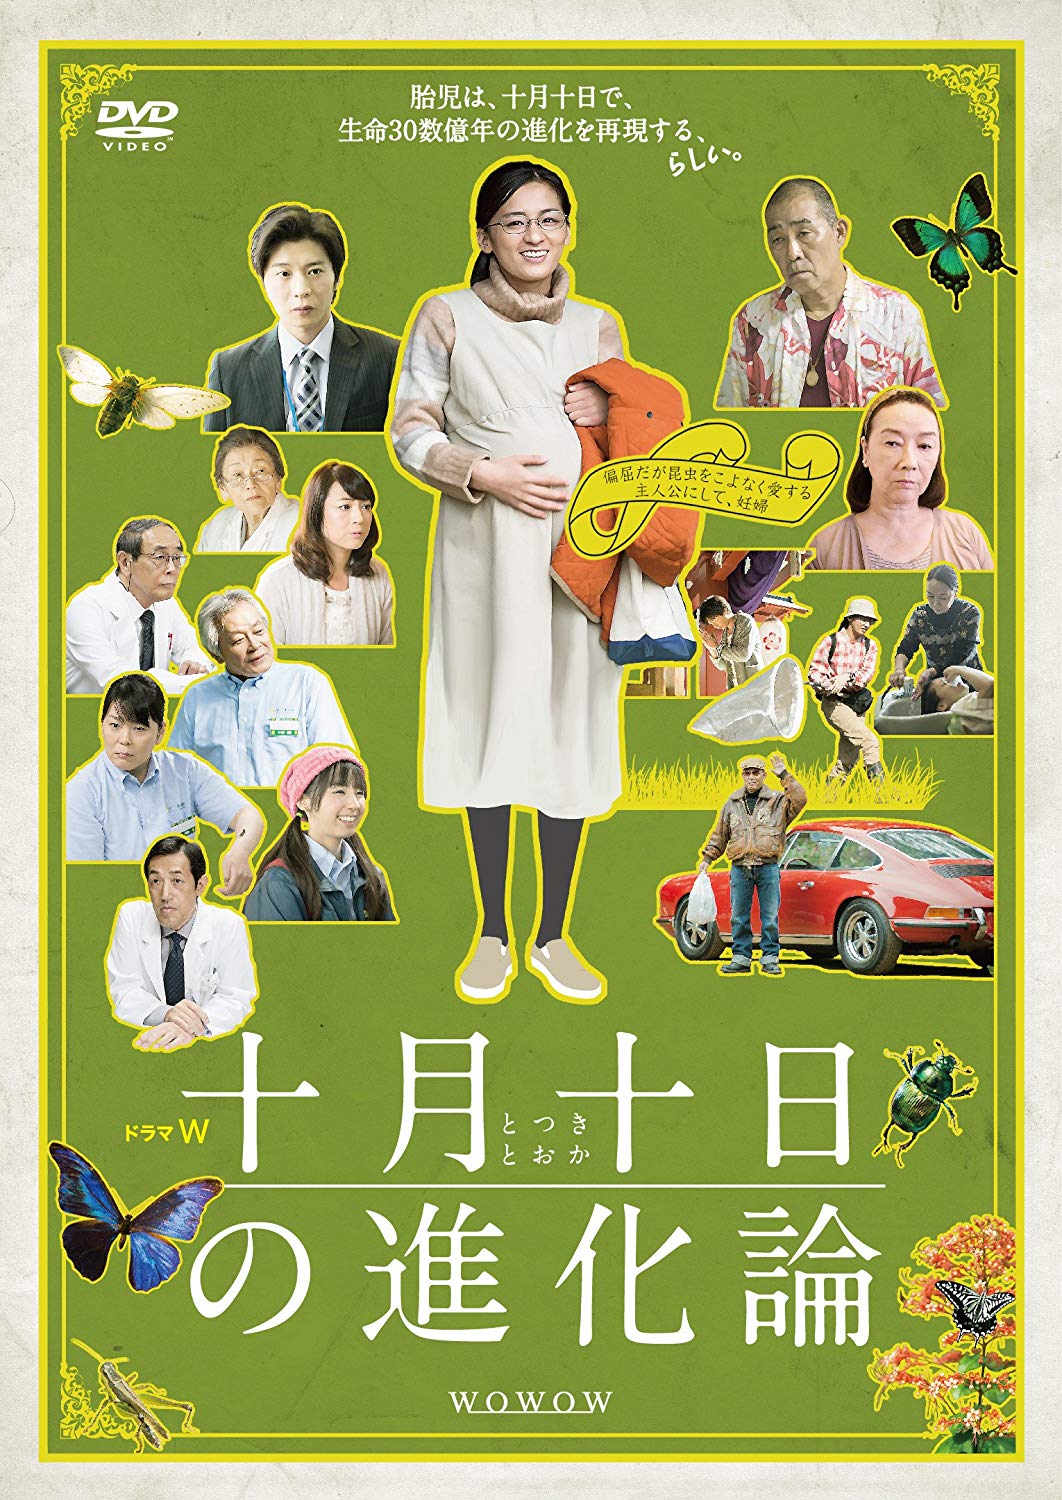 田中圭のドラマ 映画おすすめランキング85選 最新版 Rank1 ランク1 人気ランキングまとめサイト 国内最大級